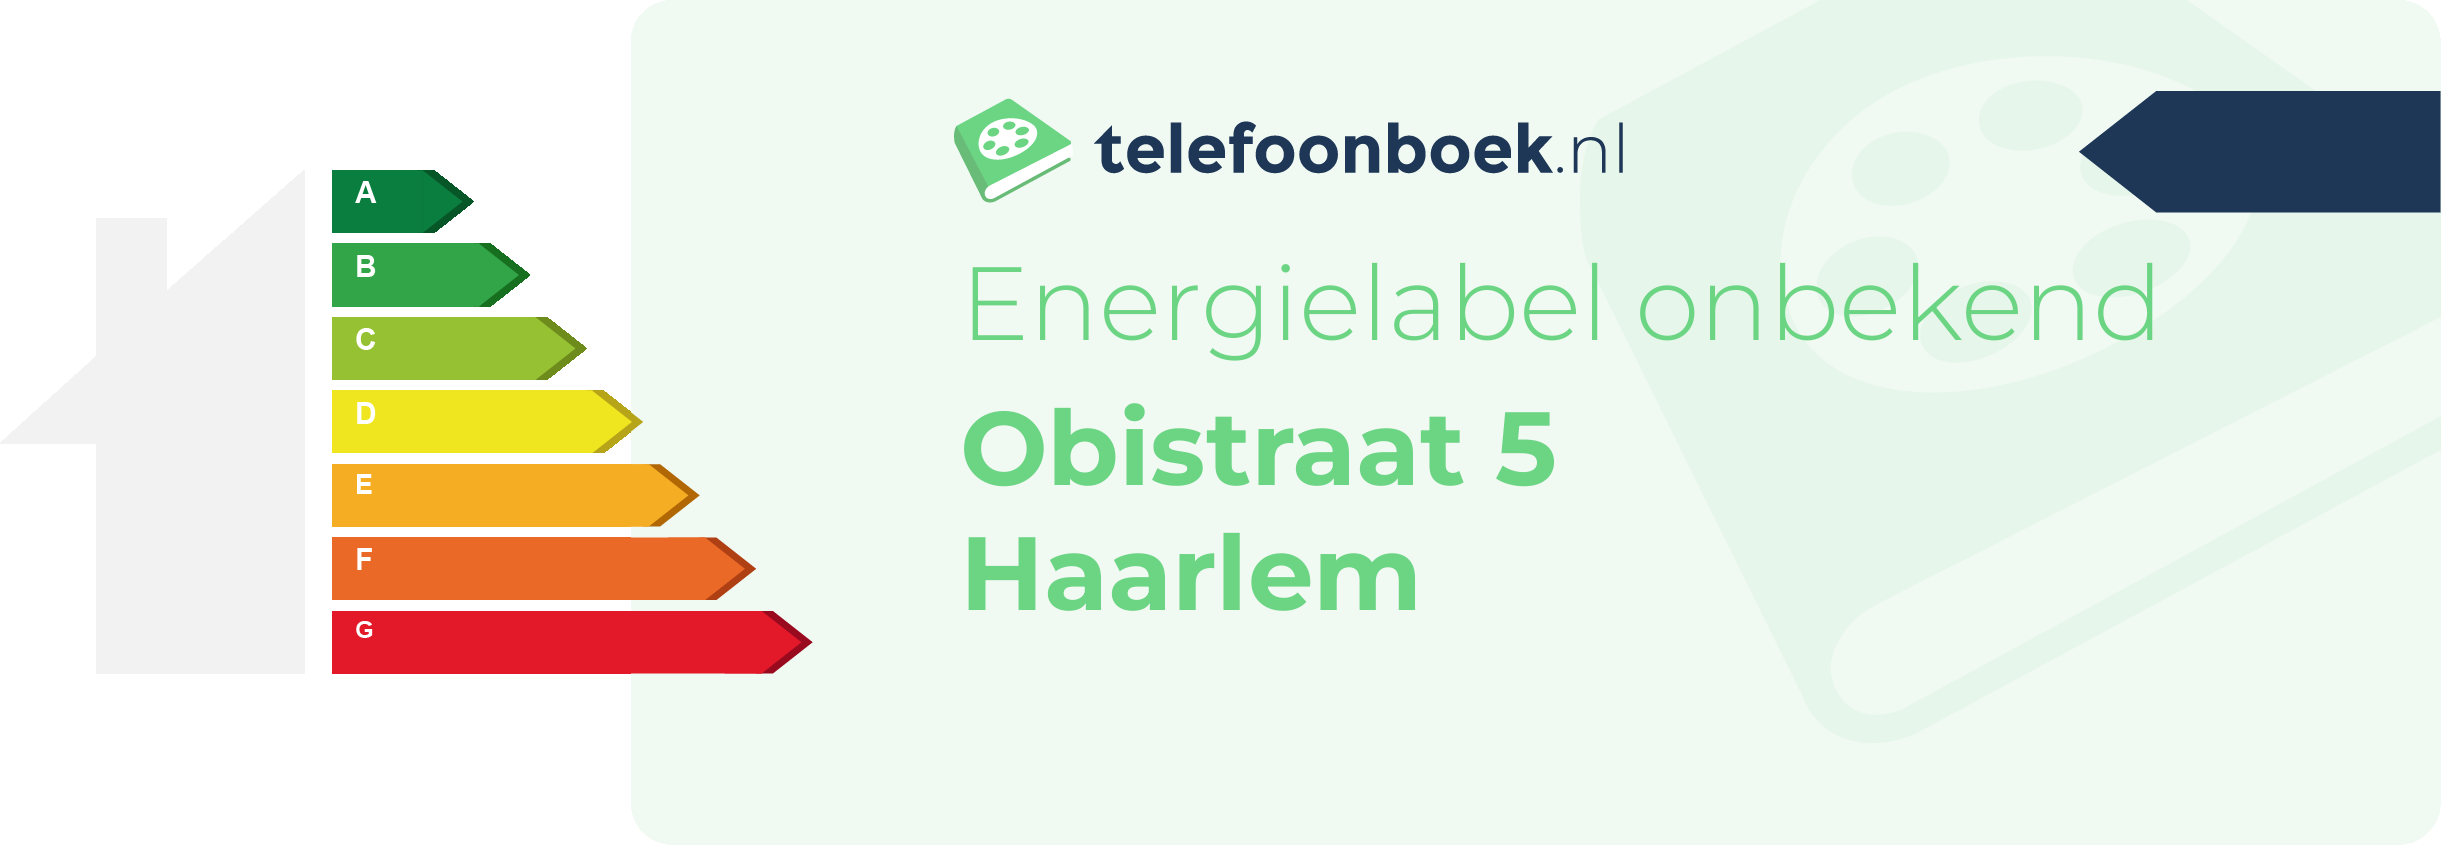 Energielabel Obistraat 5 Haarlem